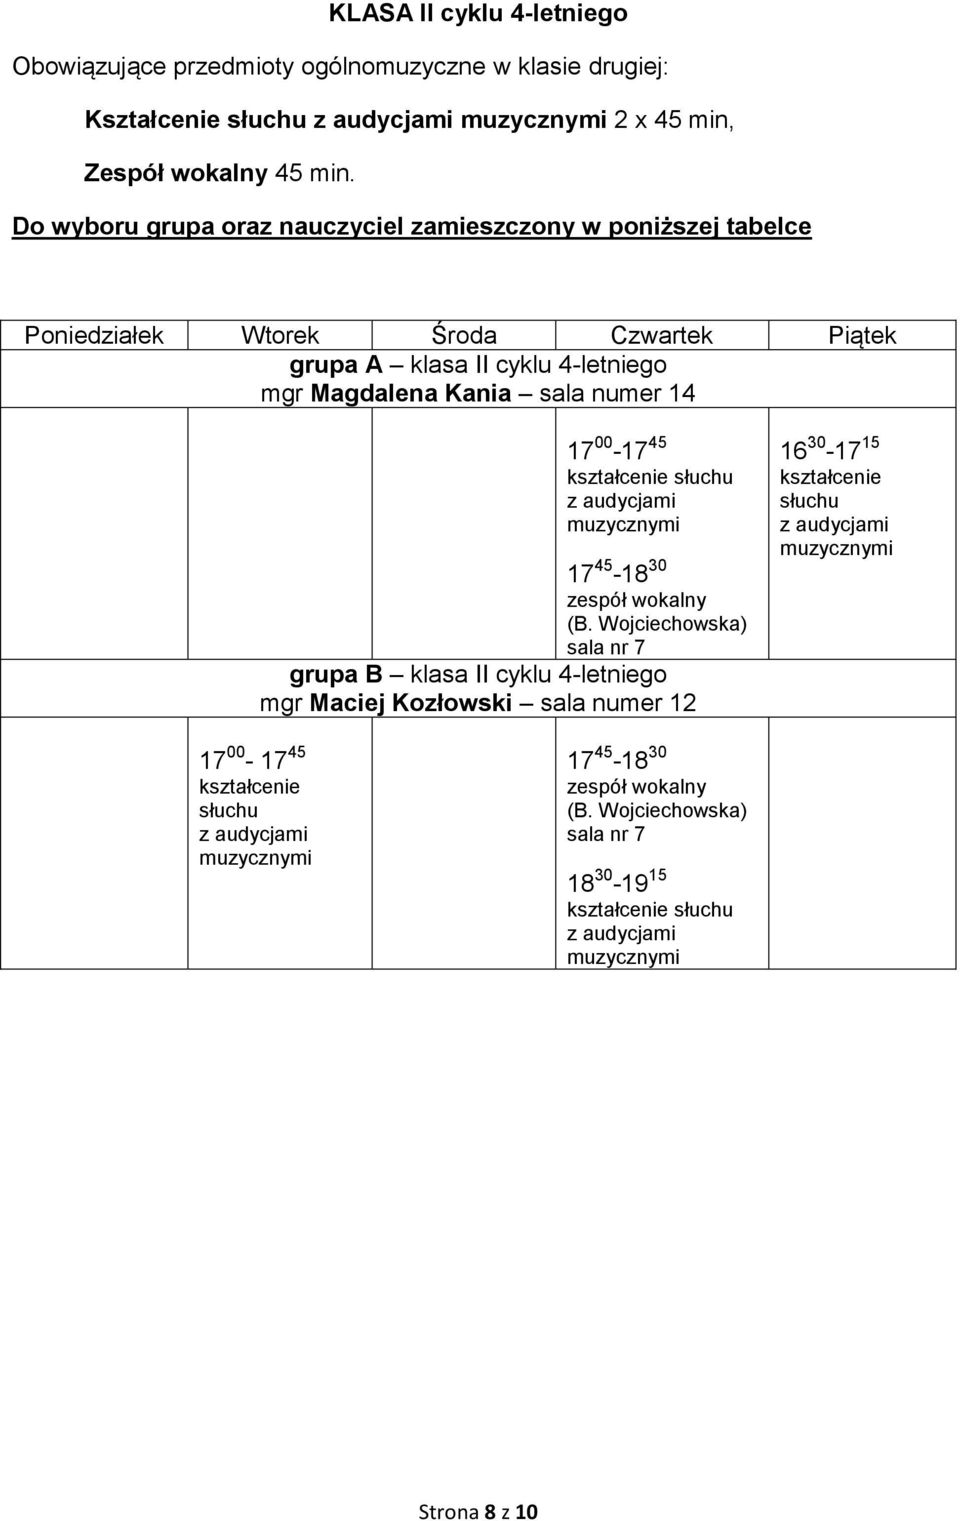 Do wyboru grupa oraz nauczyciel zamieszczony w poniższej tabelce grupa A klasa II cyklu 4-letniego